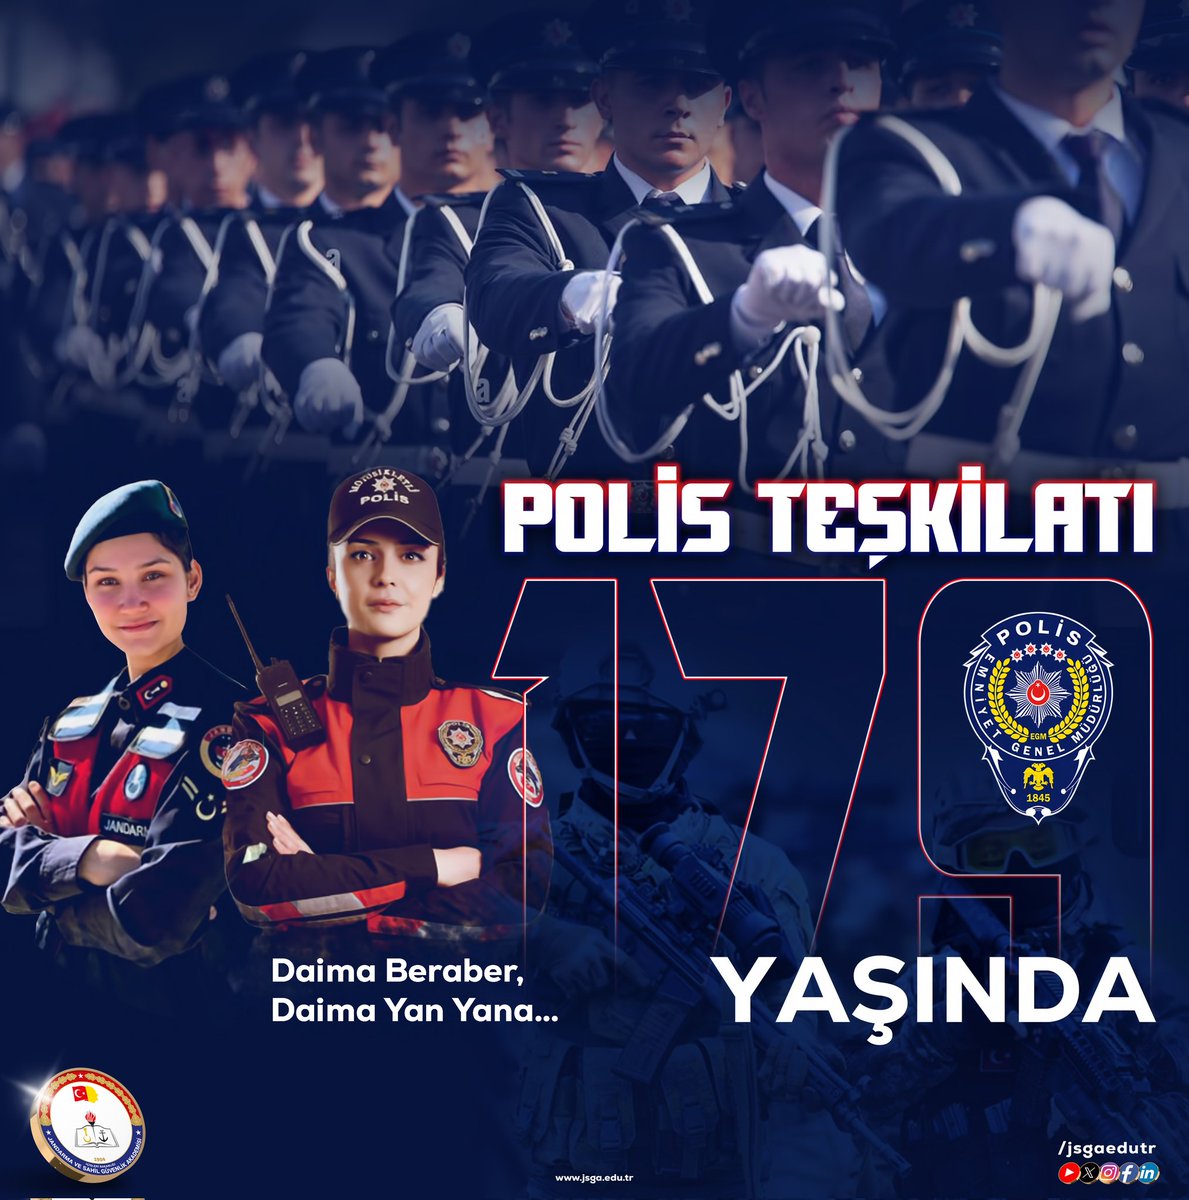 Daima beraber, daima yan yana.

Türk Polis Teşkilatının kuruluşunun 179'uncu yılı kutlu olsun.

#PolisHaftası
#179Yaşında
#TürkPolisi